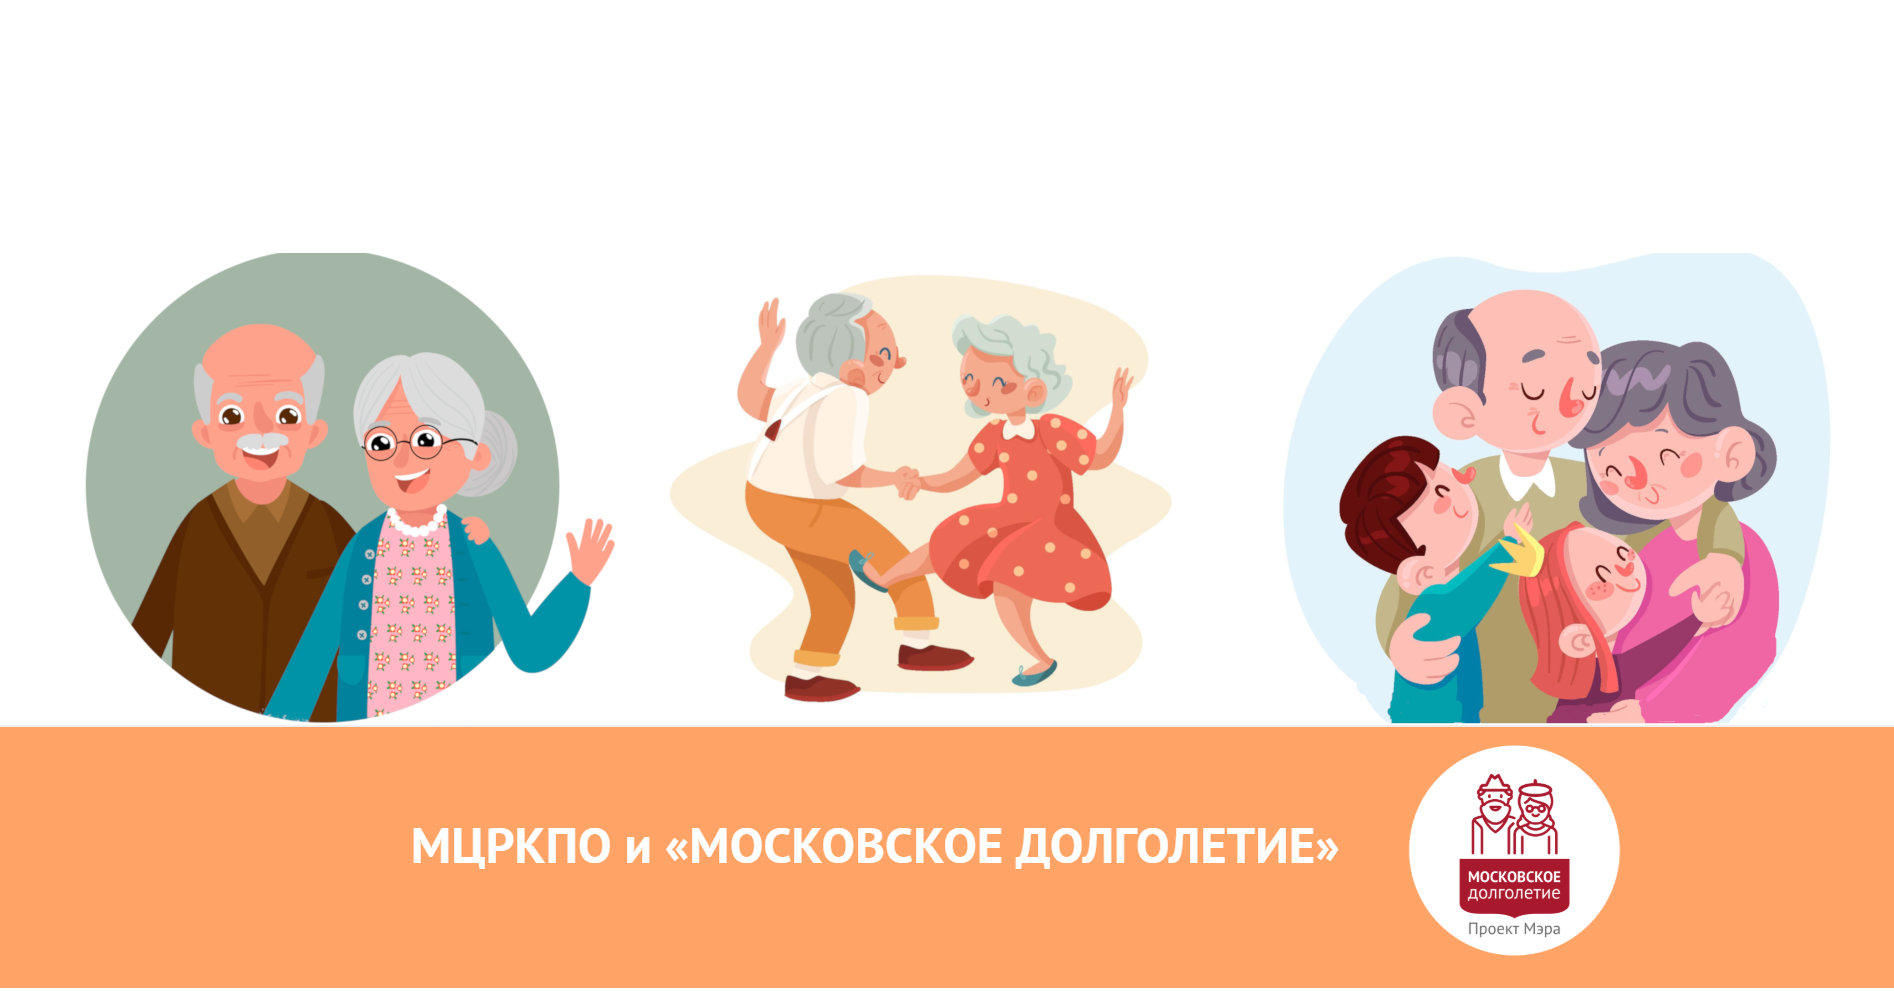 Московское долголетие логотип. Активное долголетие рисунок. Московское долголетие рисунок. Активное долголетие плакат.